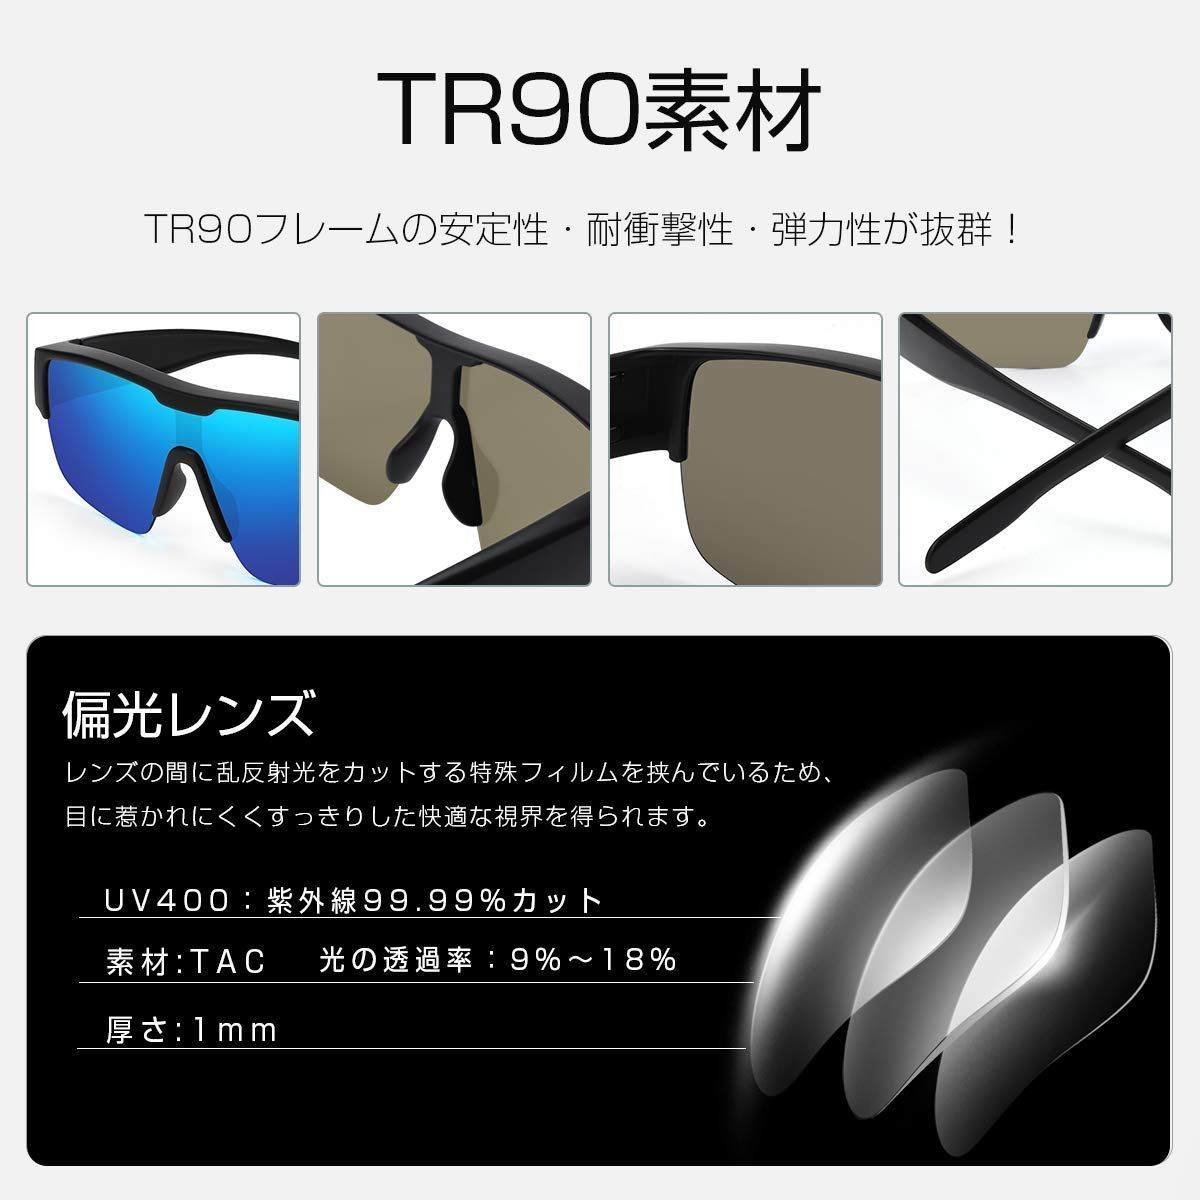 [TINHAO] 偏光 オーバーグラス サングラス メガネの上から 運転用 偏光レンズ UV400 紫外線カット 超軽量 落下防止 運転用 バイク用 ゴルフ ランニング 男女兼用